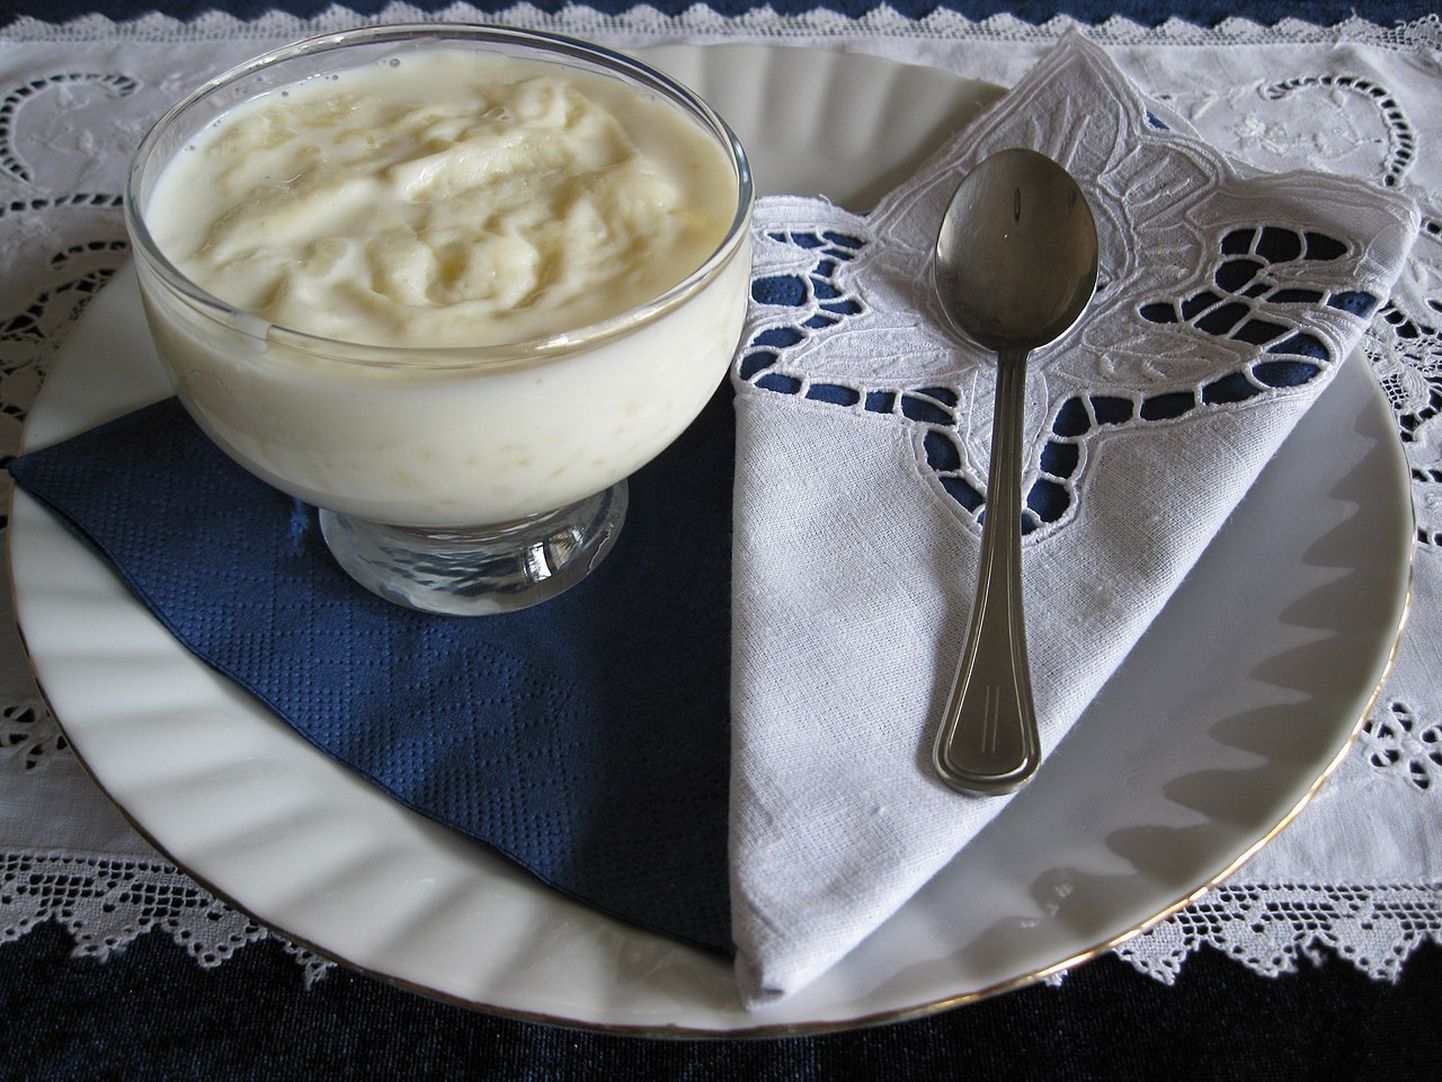 Tambëloriz on piima ja riisi sisaldav puding, mis on üks populaarsemaid Albaania magustoite.